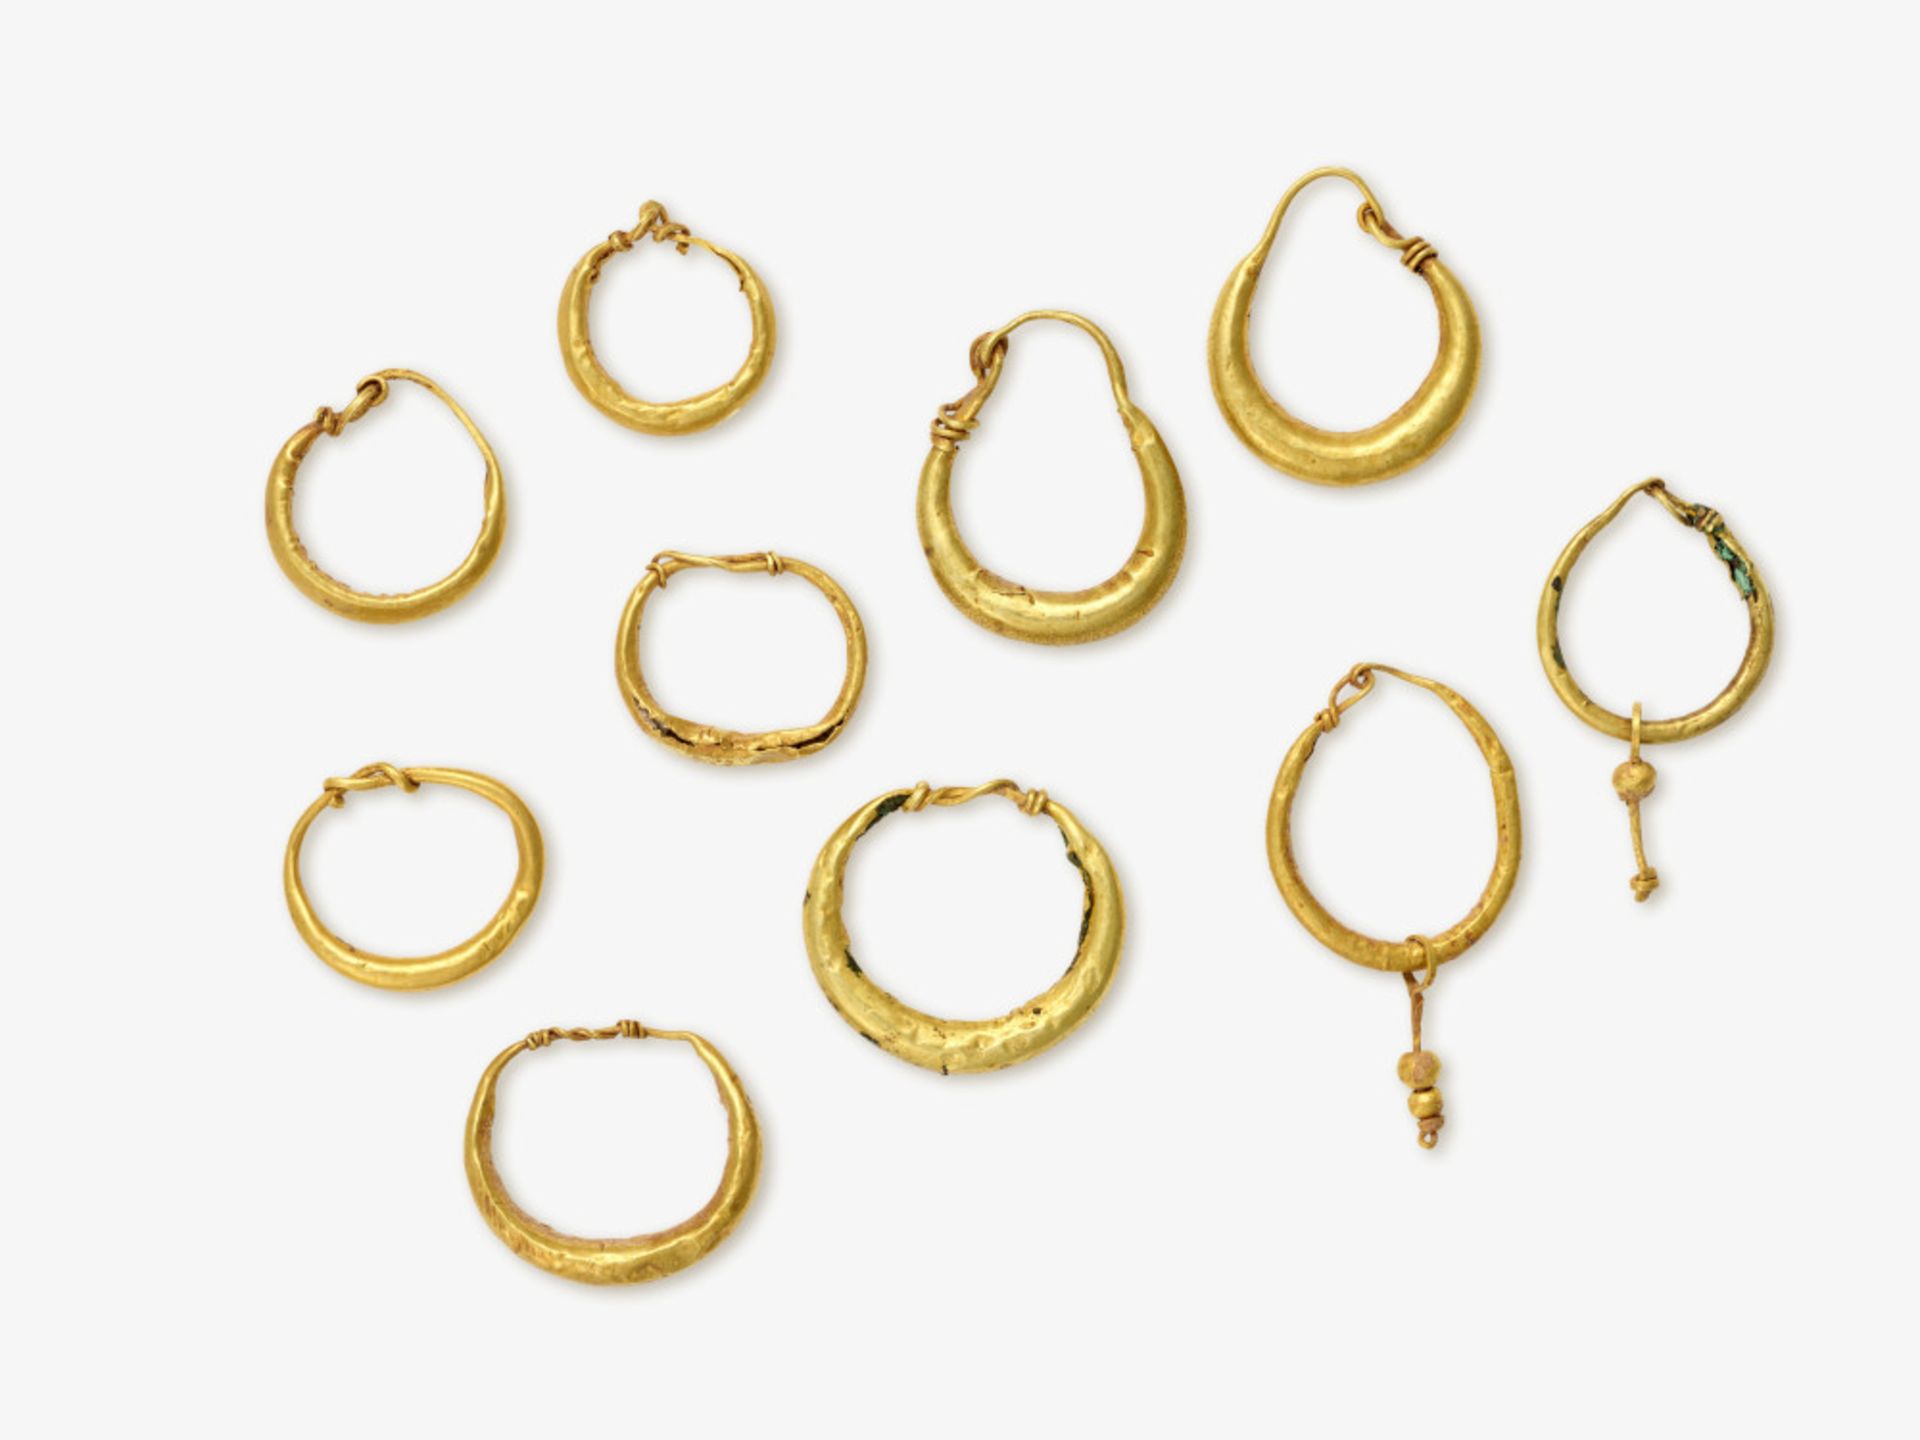 Five pair of hoop earrings - Roman, 1st - 2nd century AD